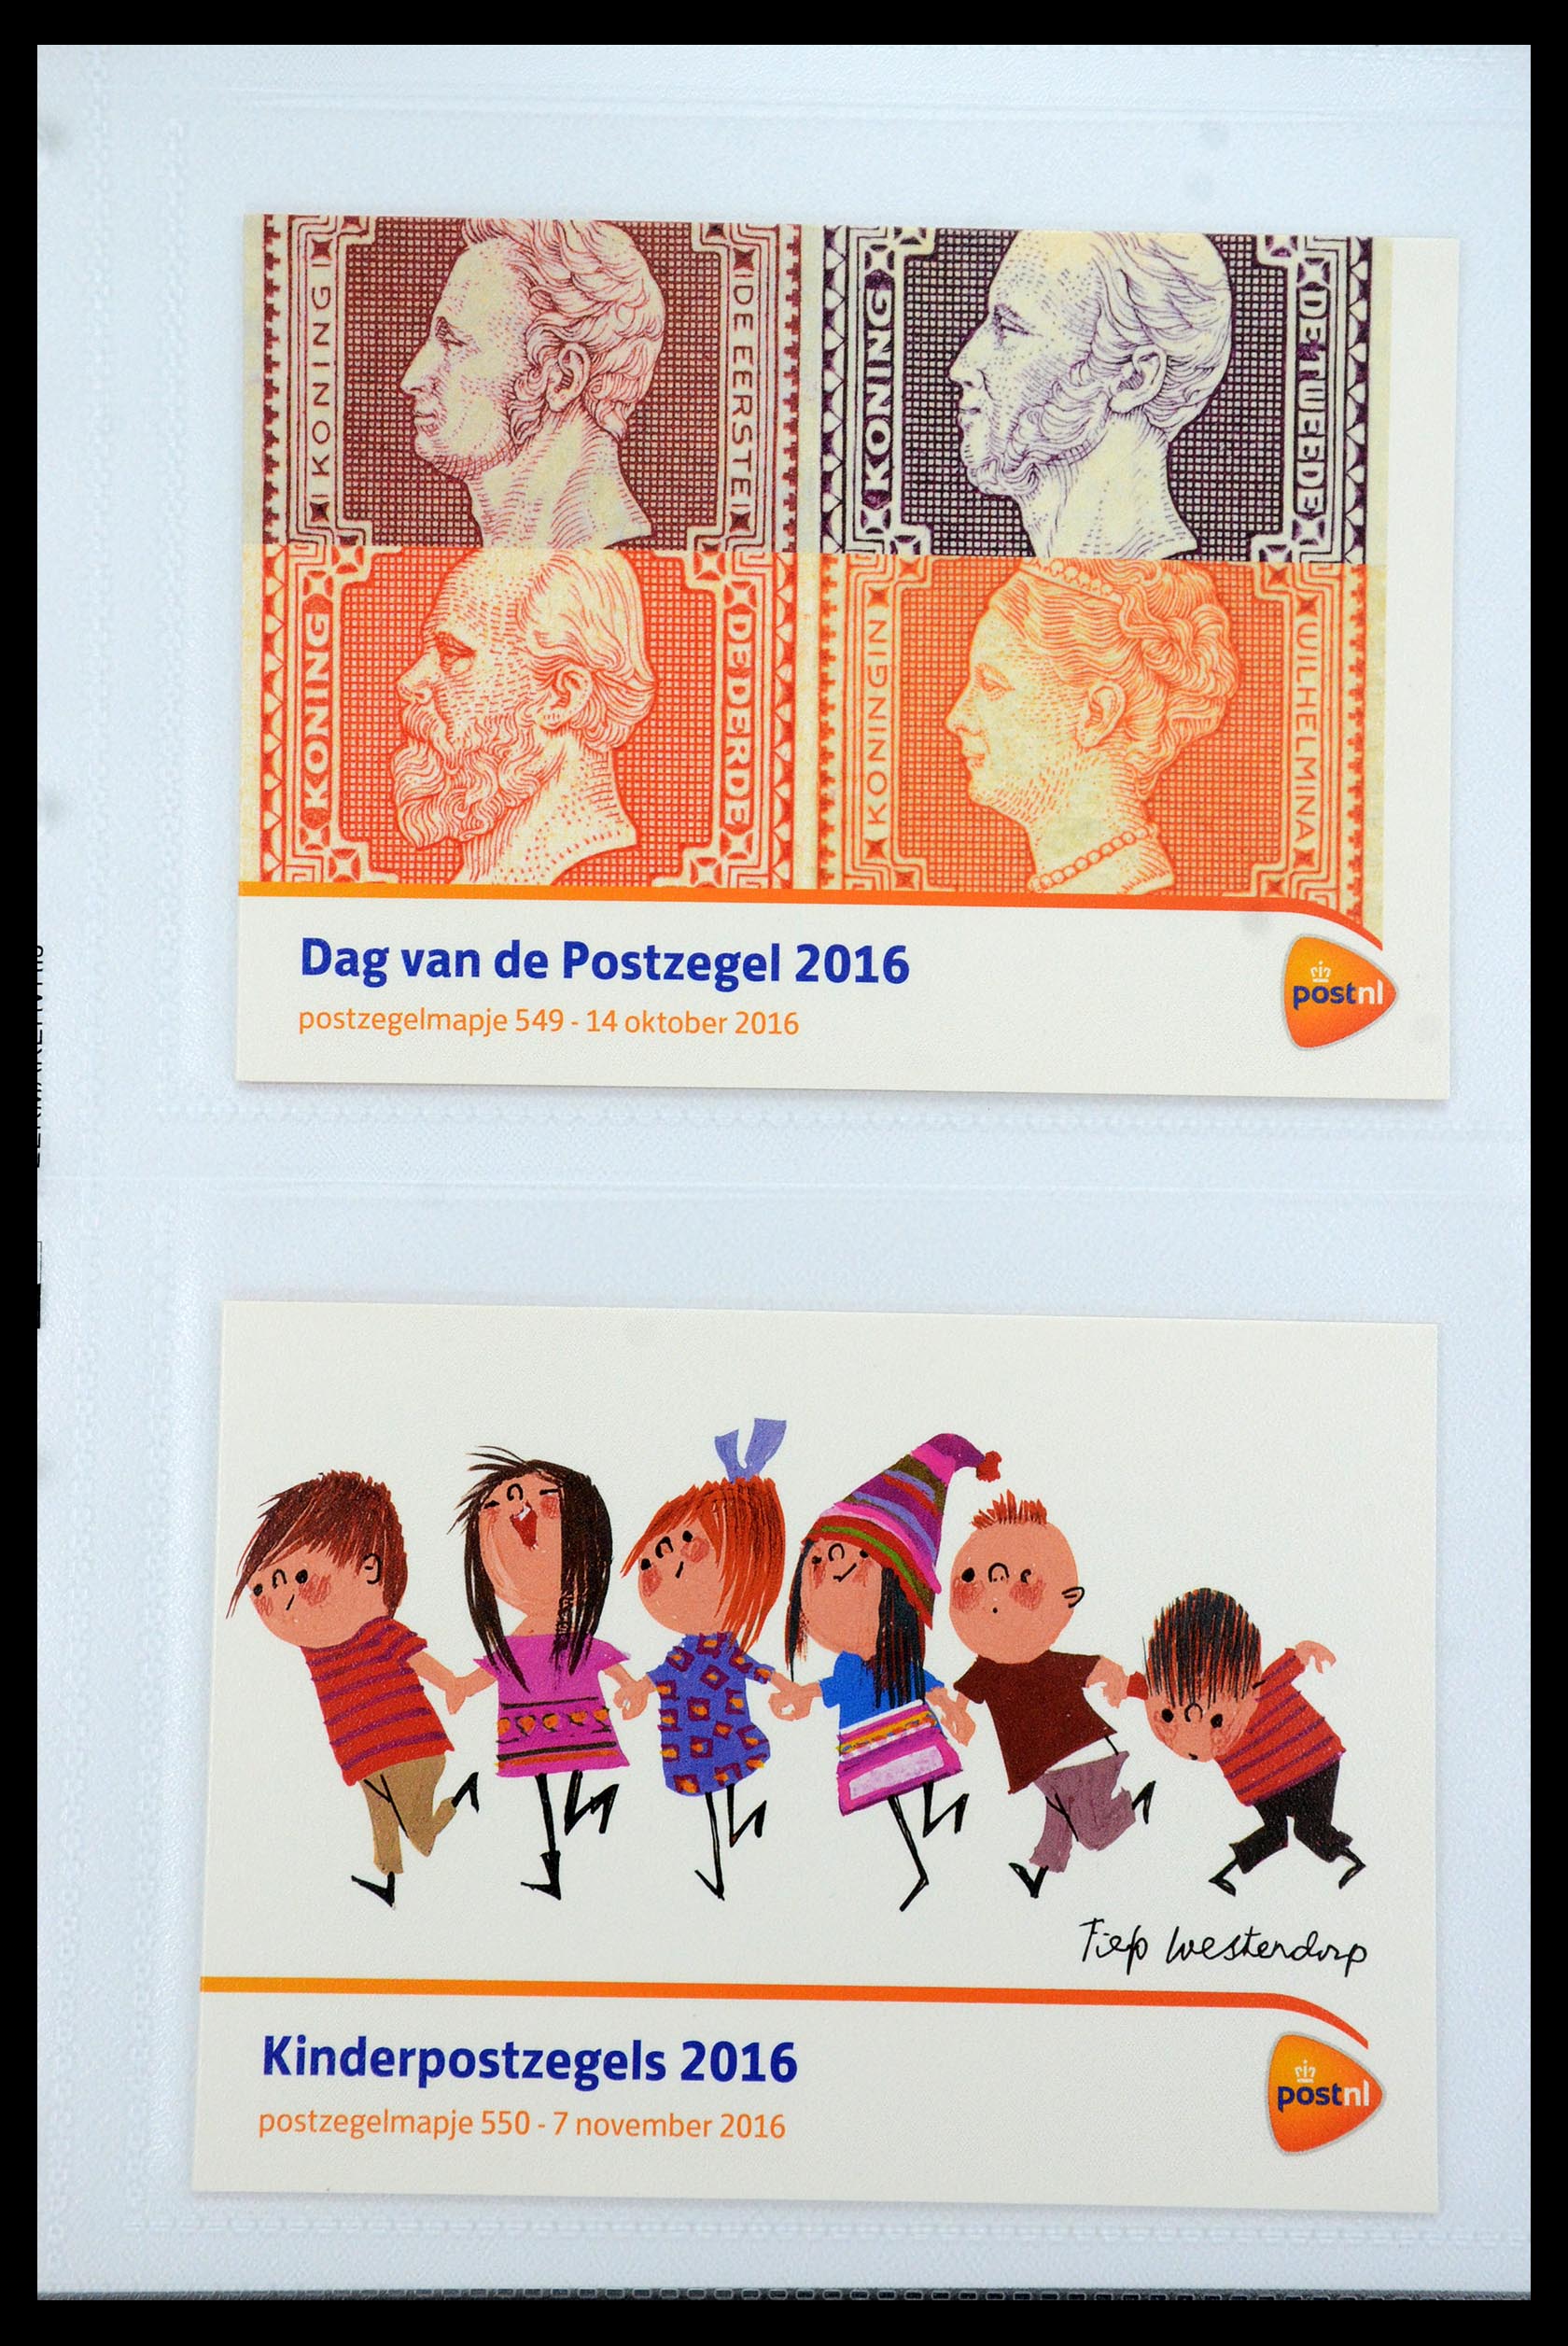 35947 328 - Stamp Collection 35947 Netherlands PTT presentation packs 1982-2019!